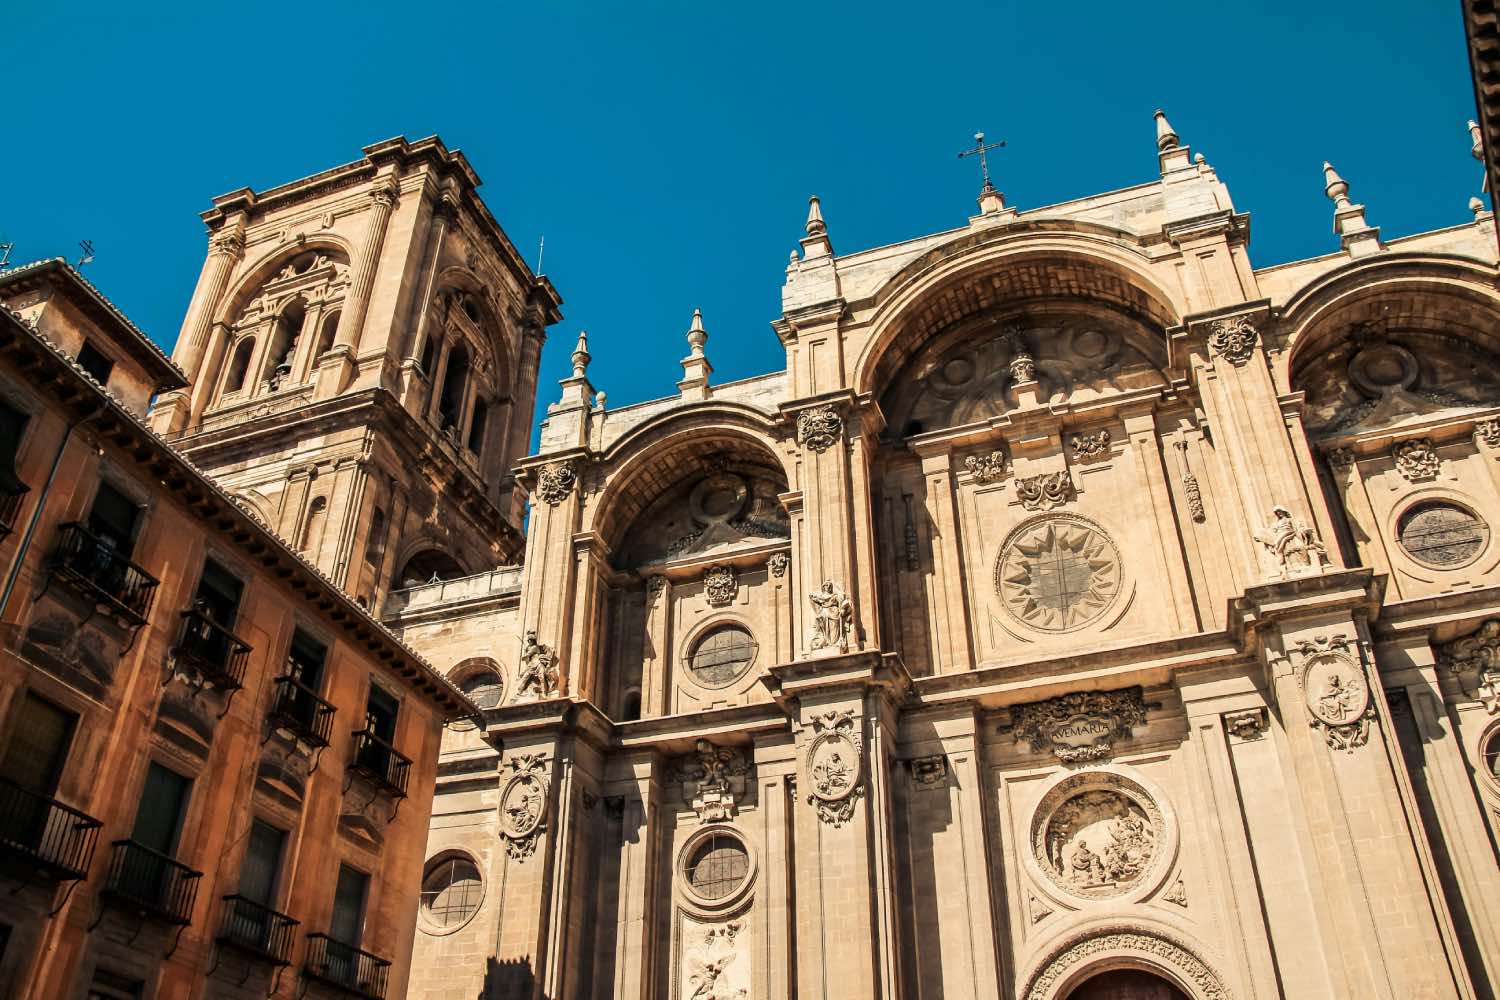 fachada barroca de la catedral de granada, arquitectura del barroco español